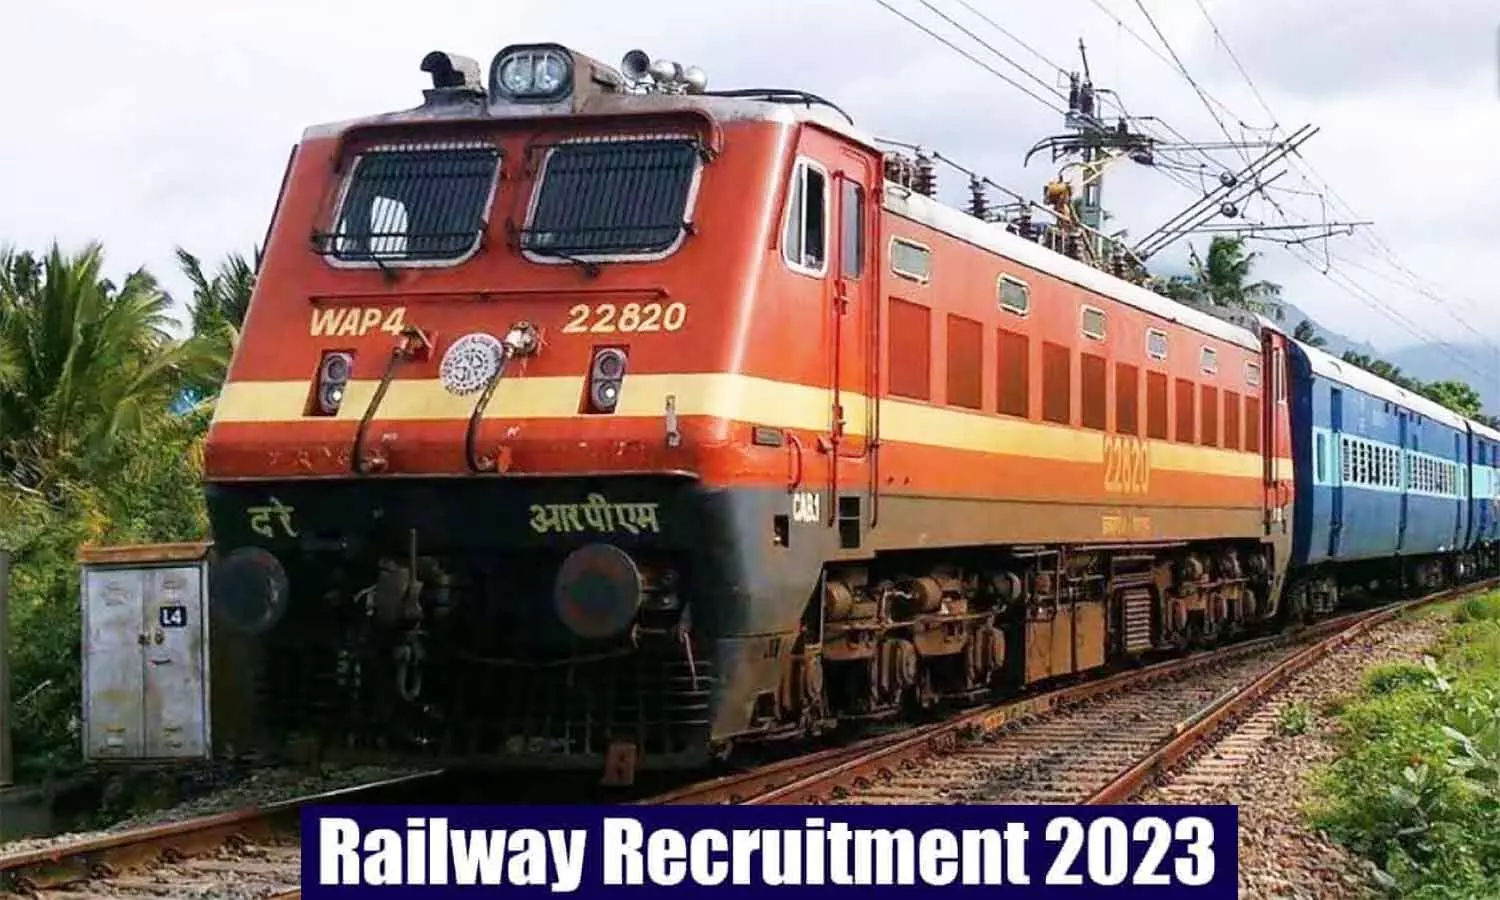 Railway Recruitment 2023: रेलवे में सहायक लोको पायलट बनने सुनहरा अवसर, फटाफट चेक करें क्वालिफिकेशन व वैकेंसी संबंधी अन्य जानकारी